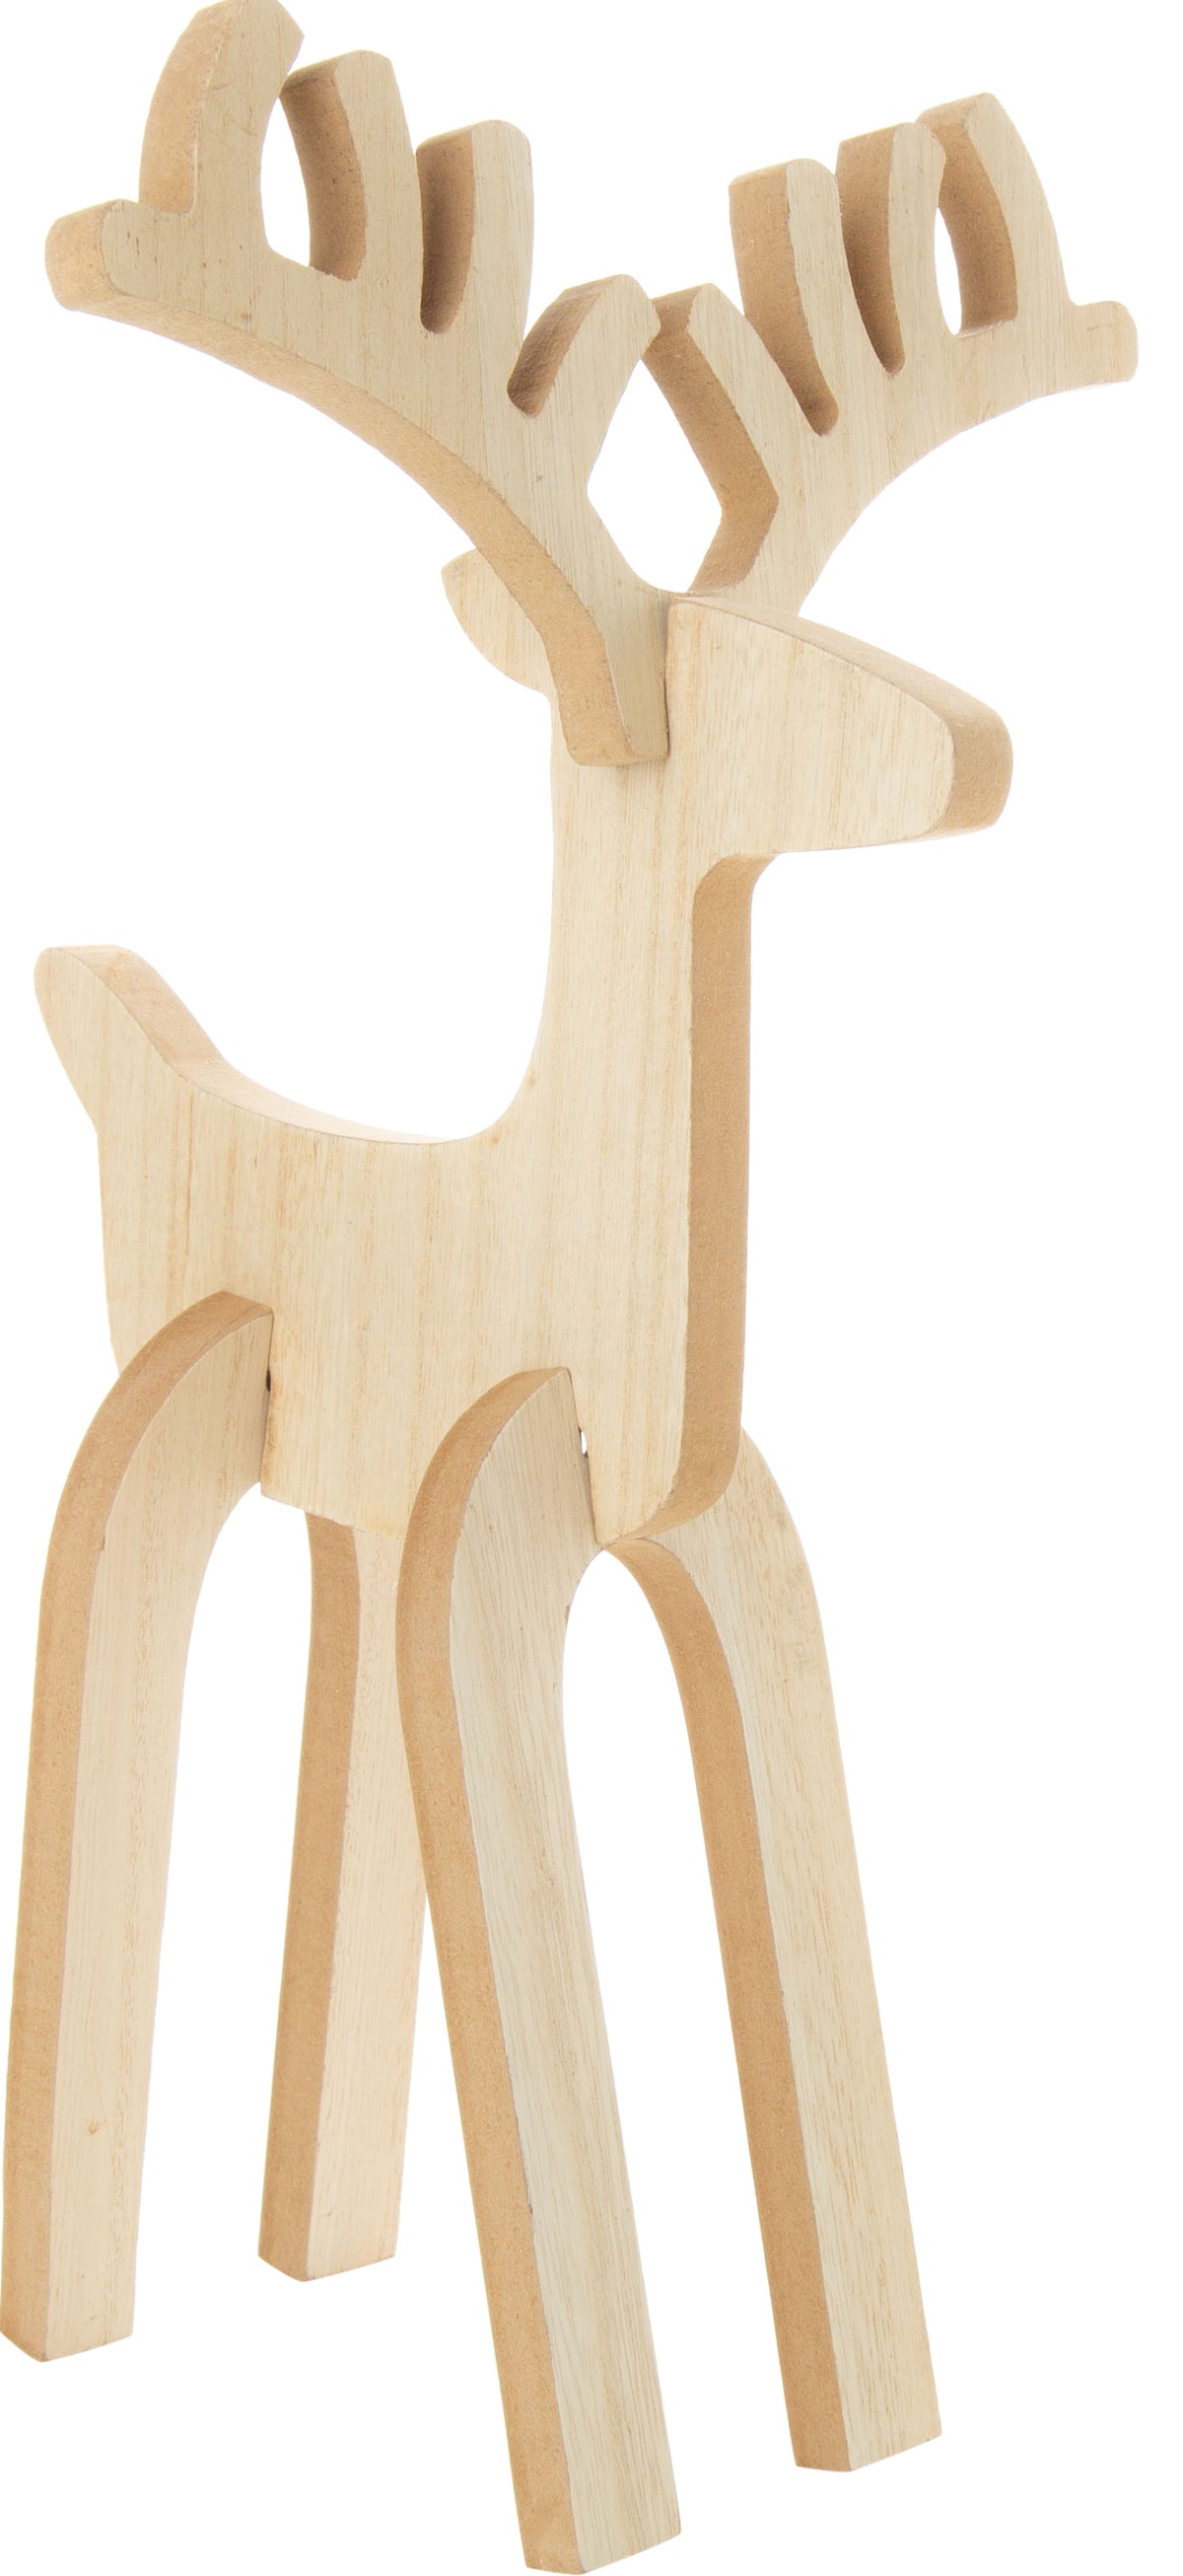 Wooden Puzzle Reindeer